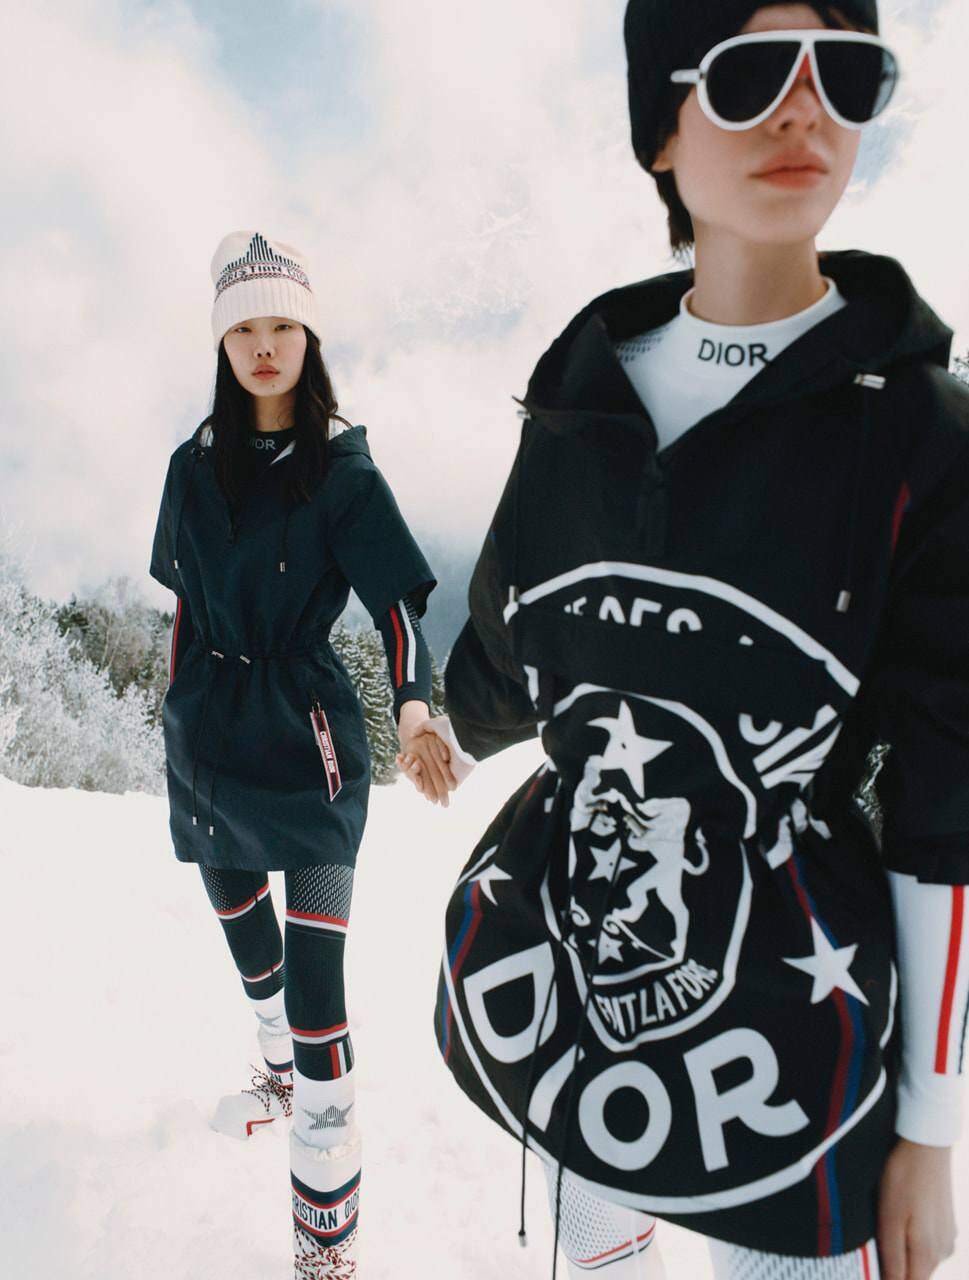 Dior đi đến những ngọn núi phủ tuyết cho bộ sưu tập capsule "DiorAlps" mới